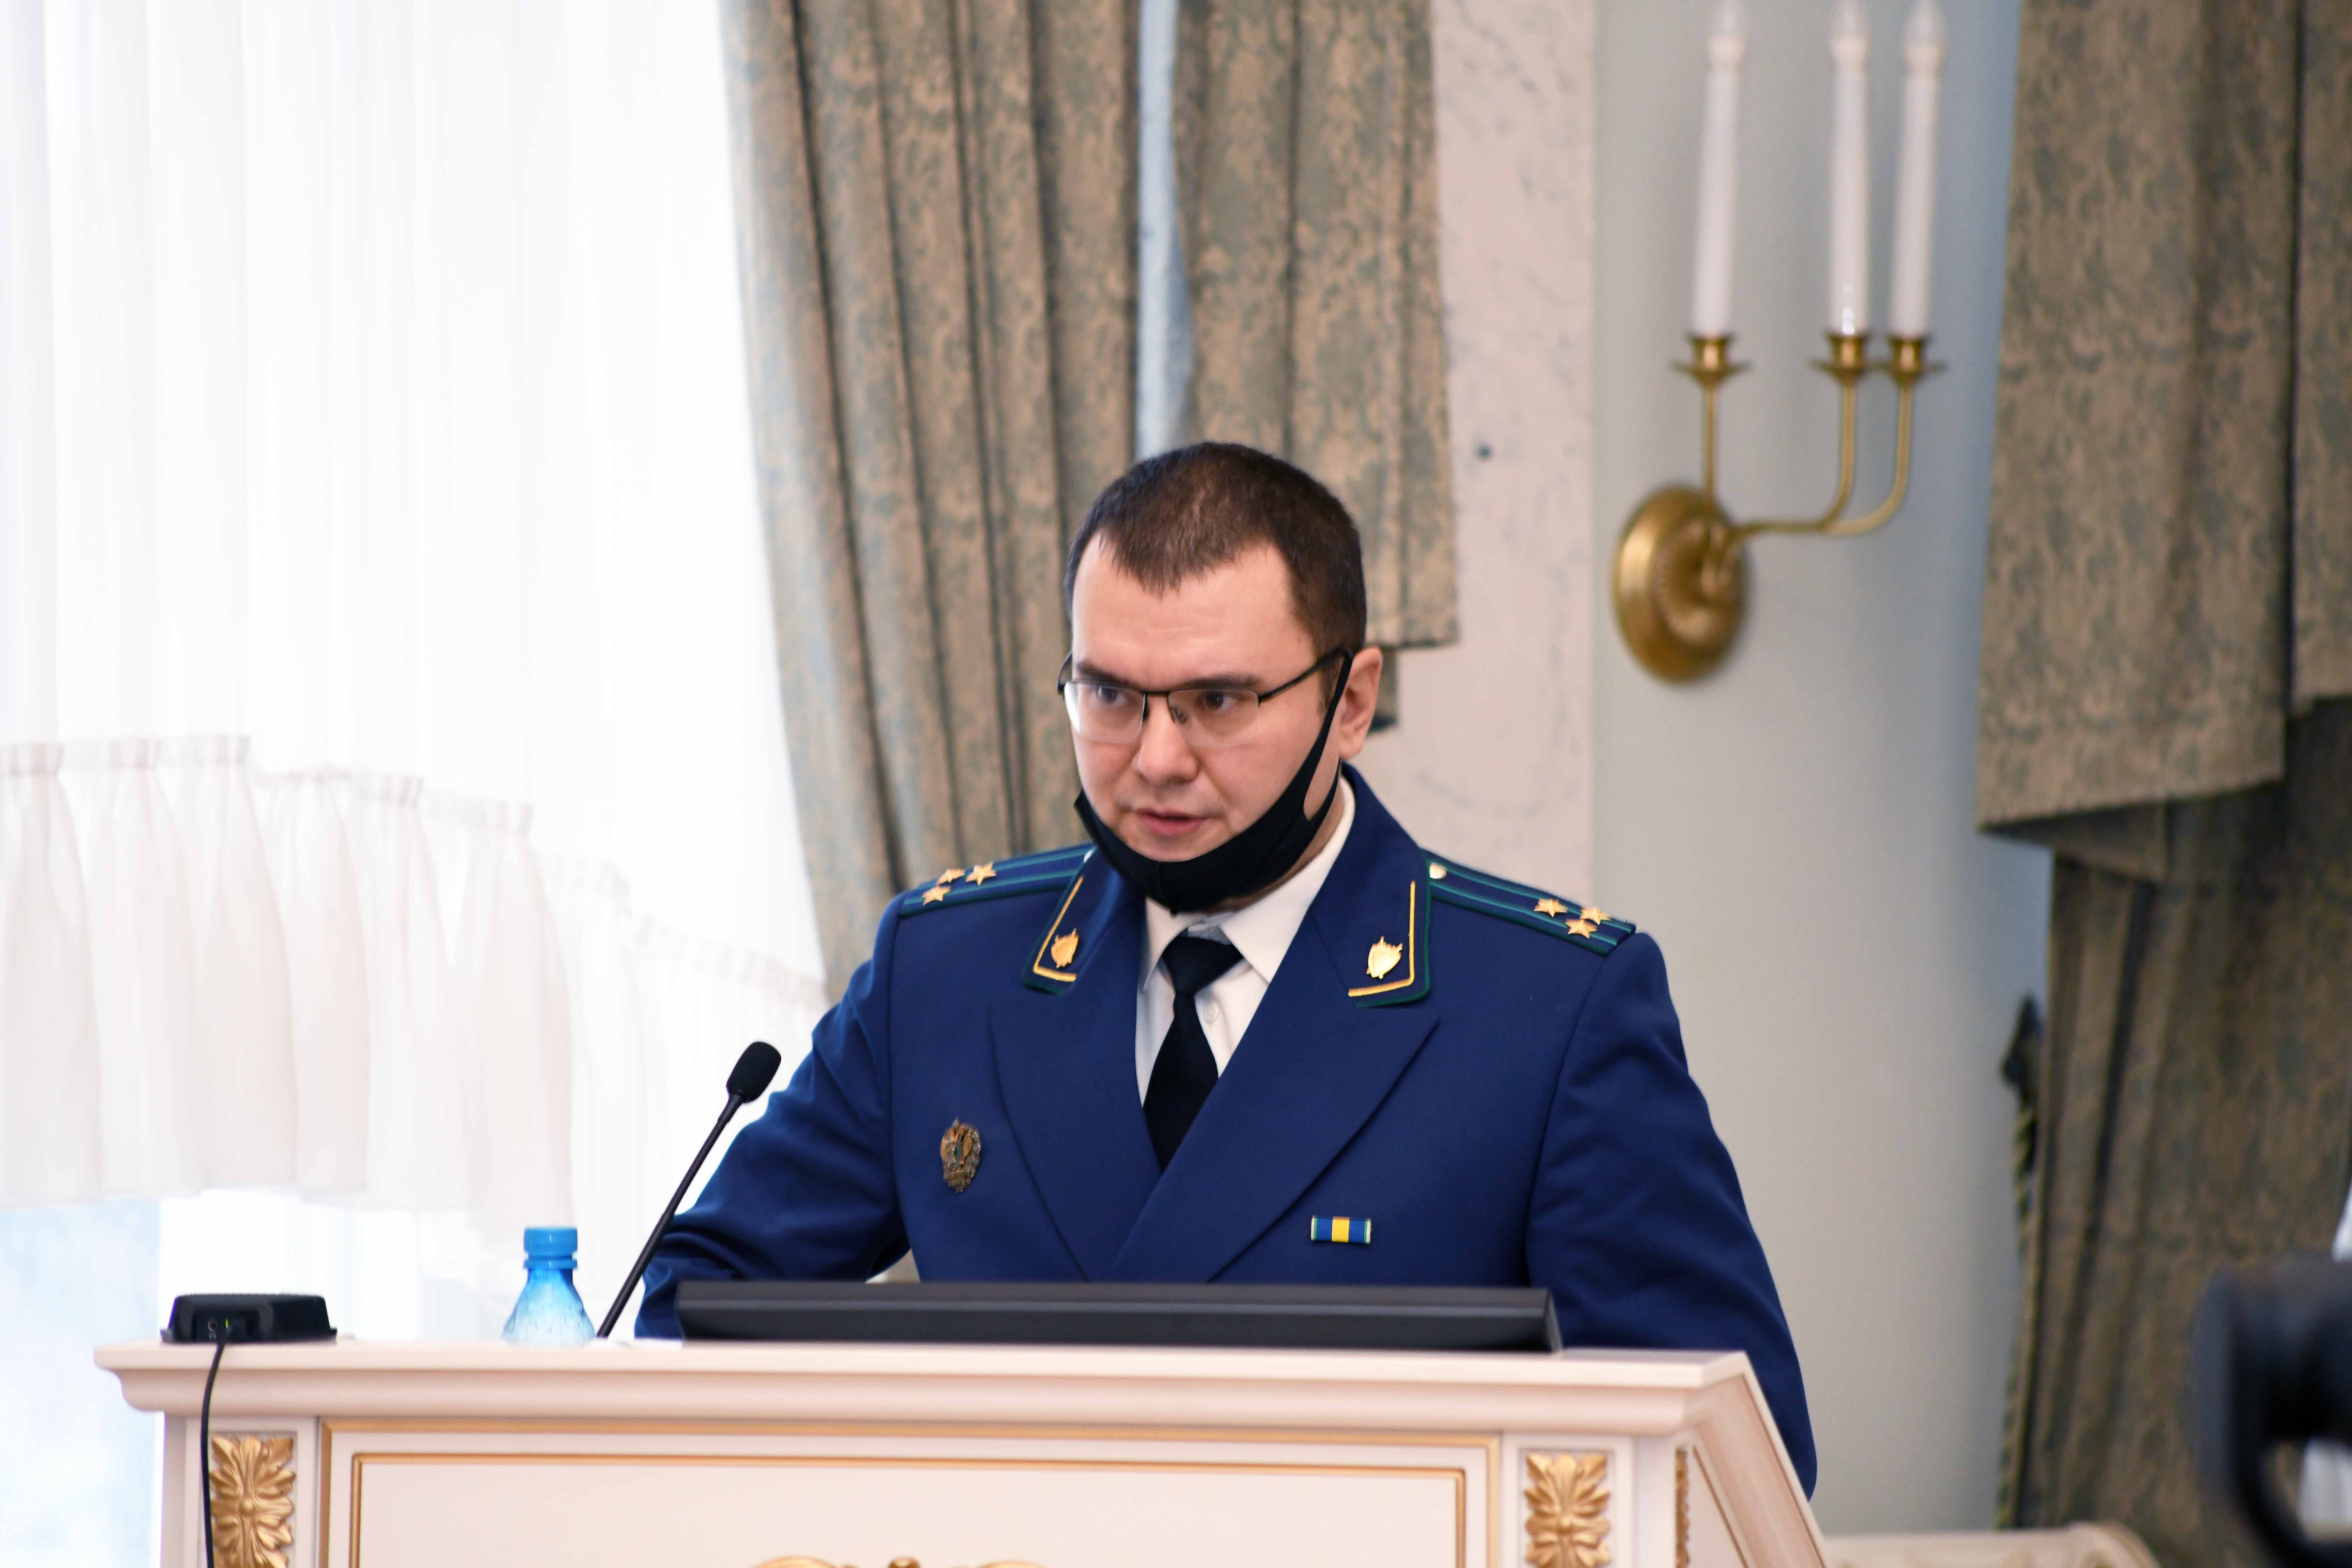 прокурор адмиралтейского района санкт петербурга